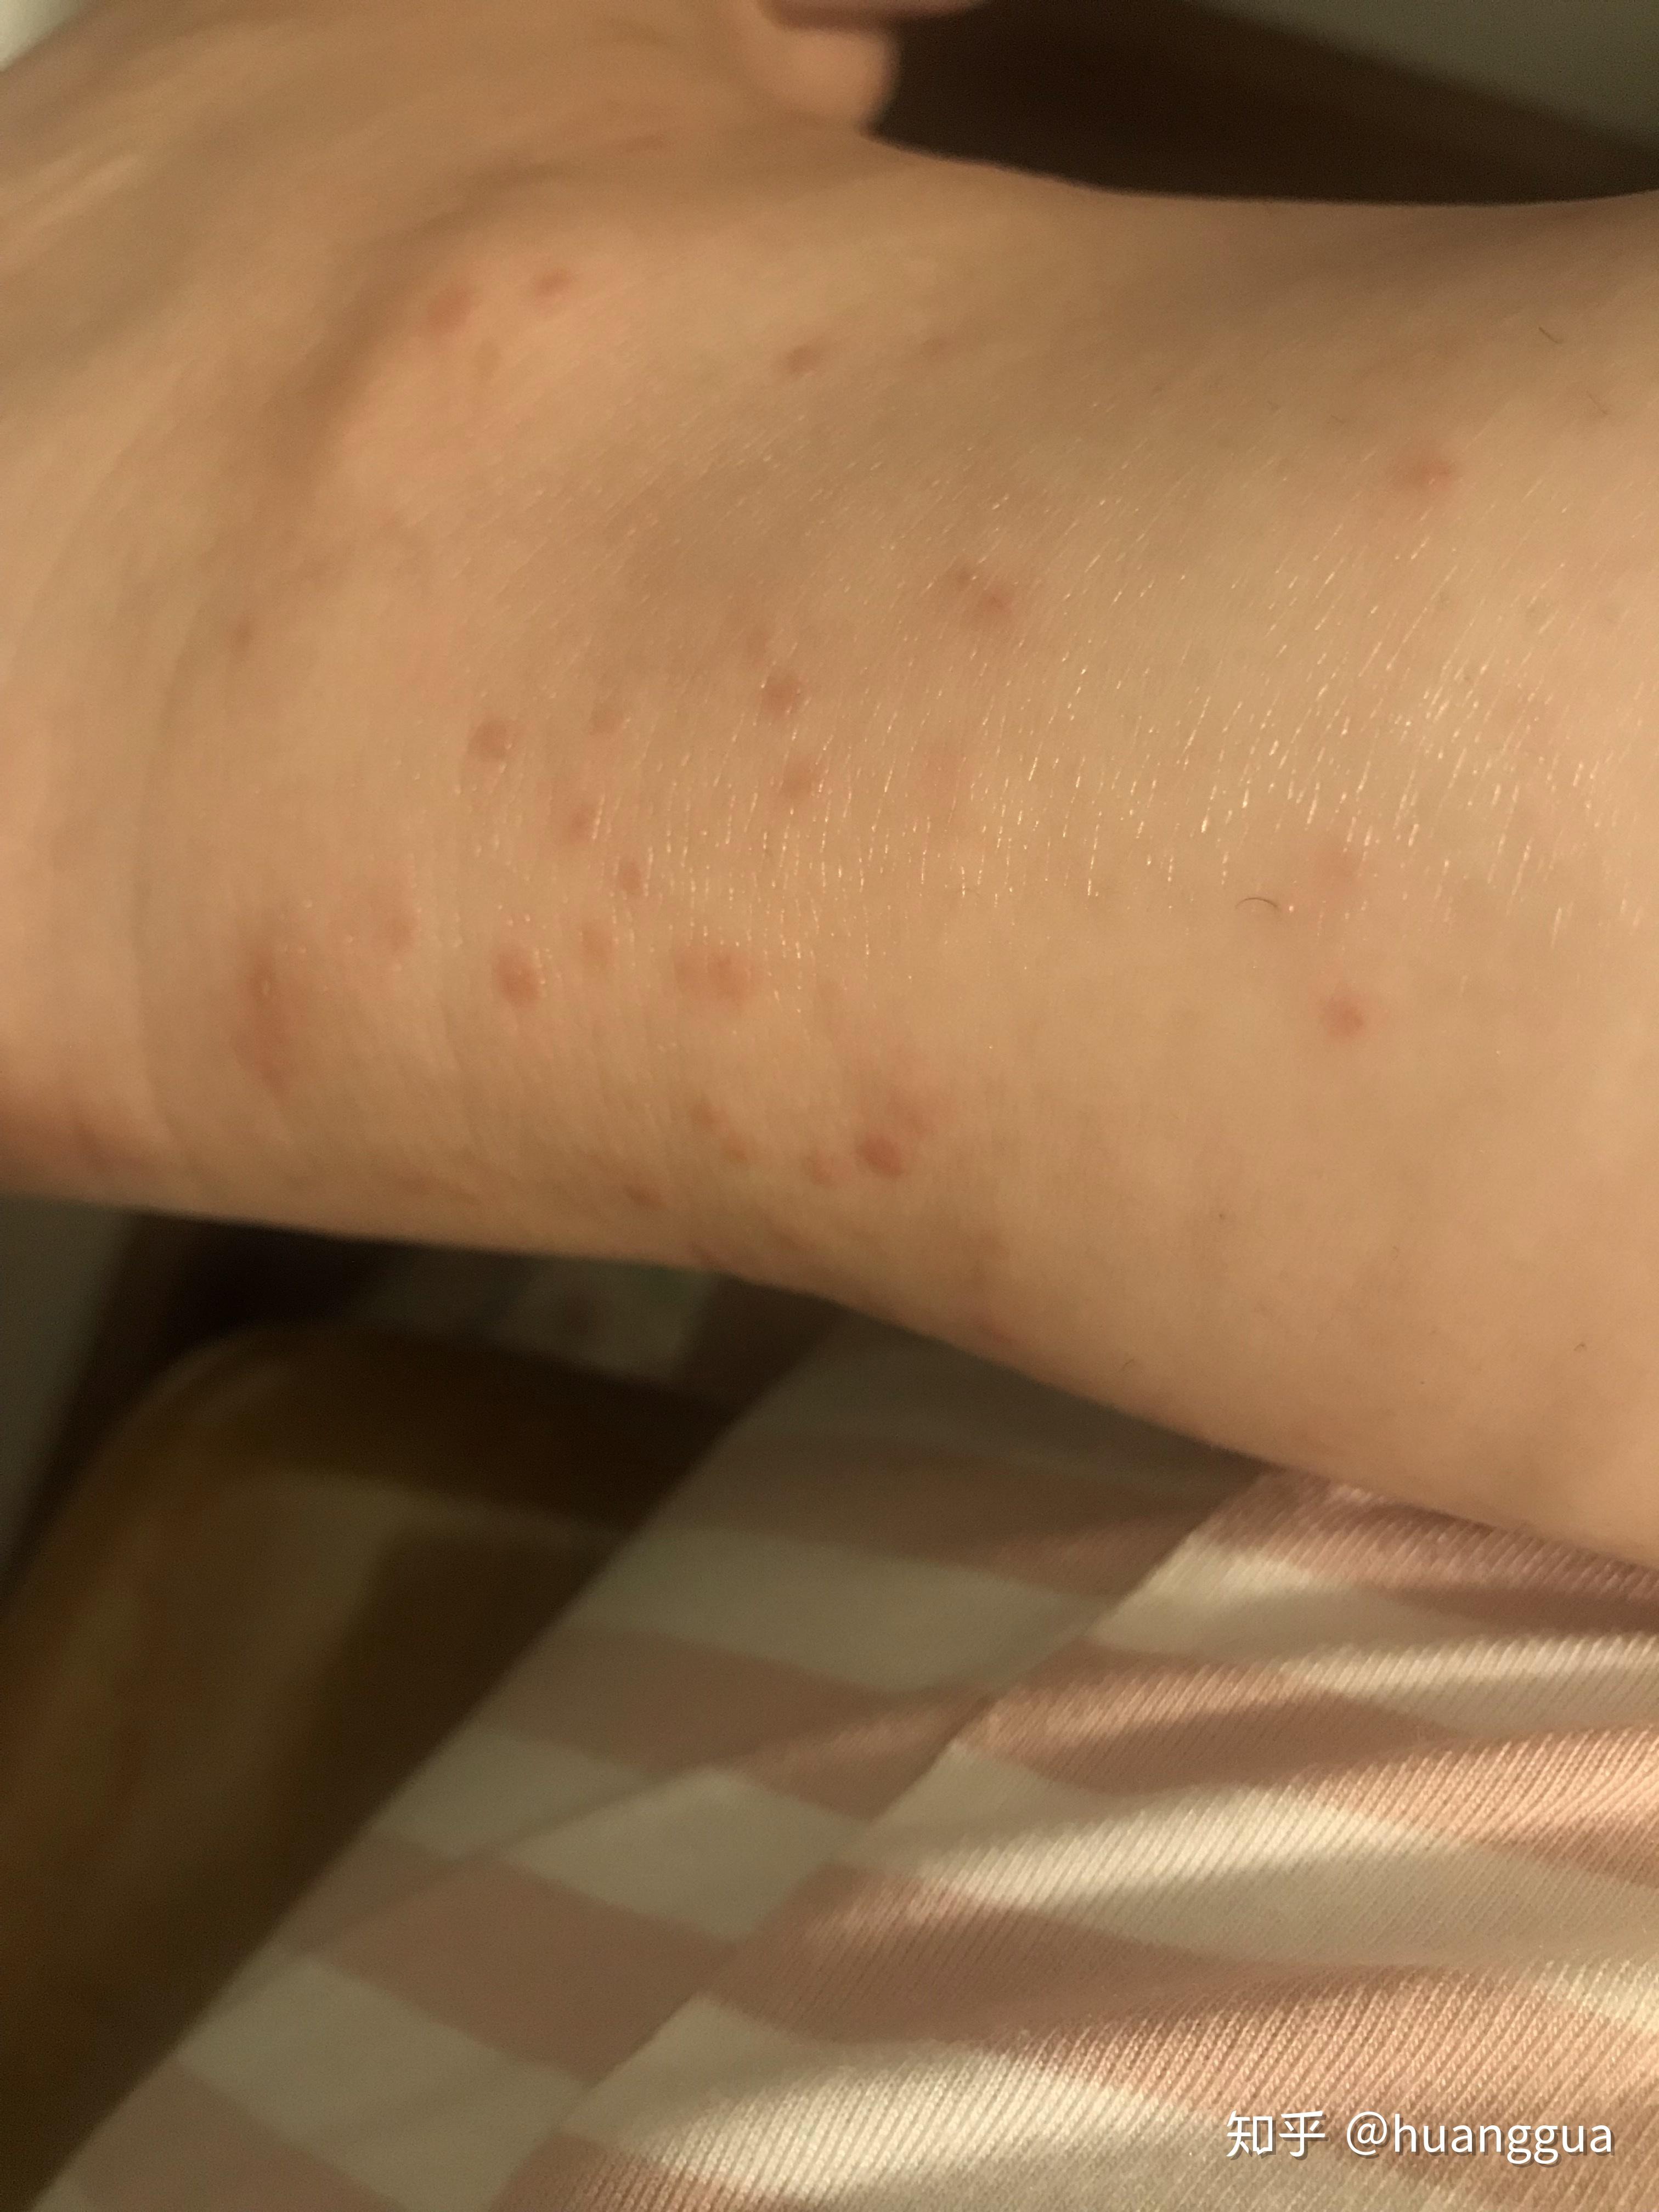 被蚊子咬的小红点图片